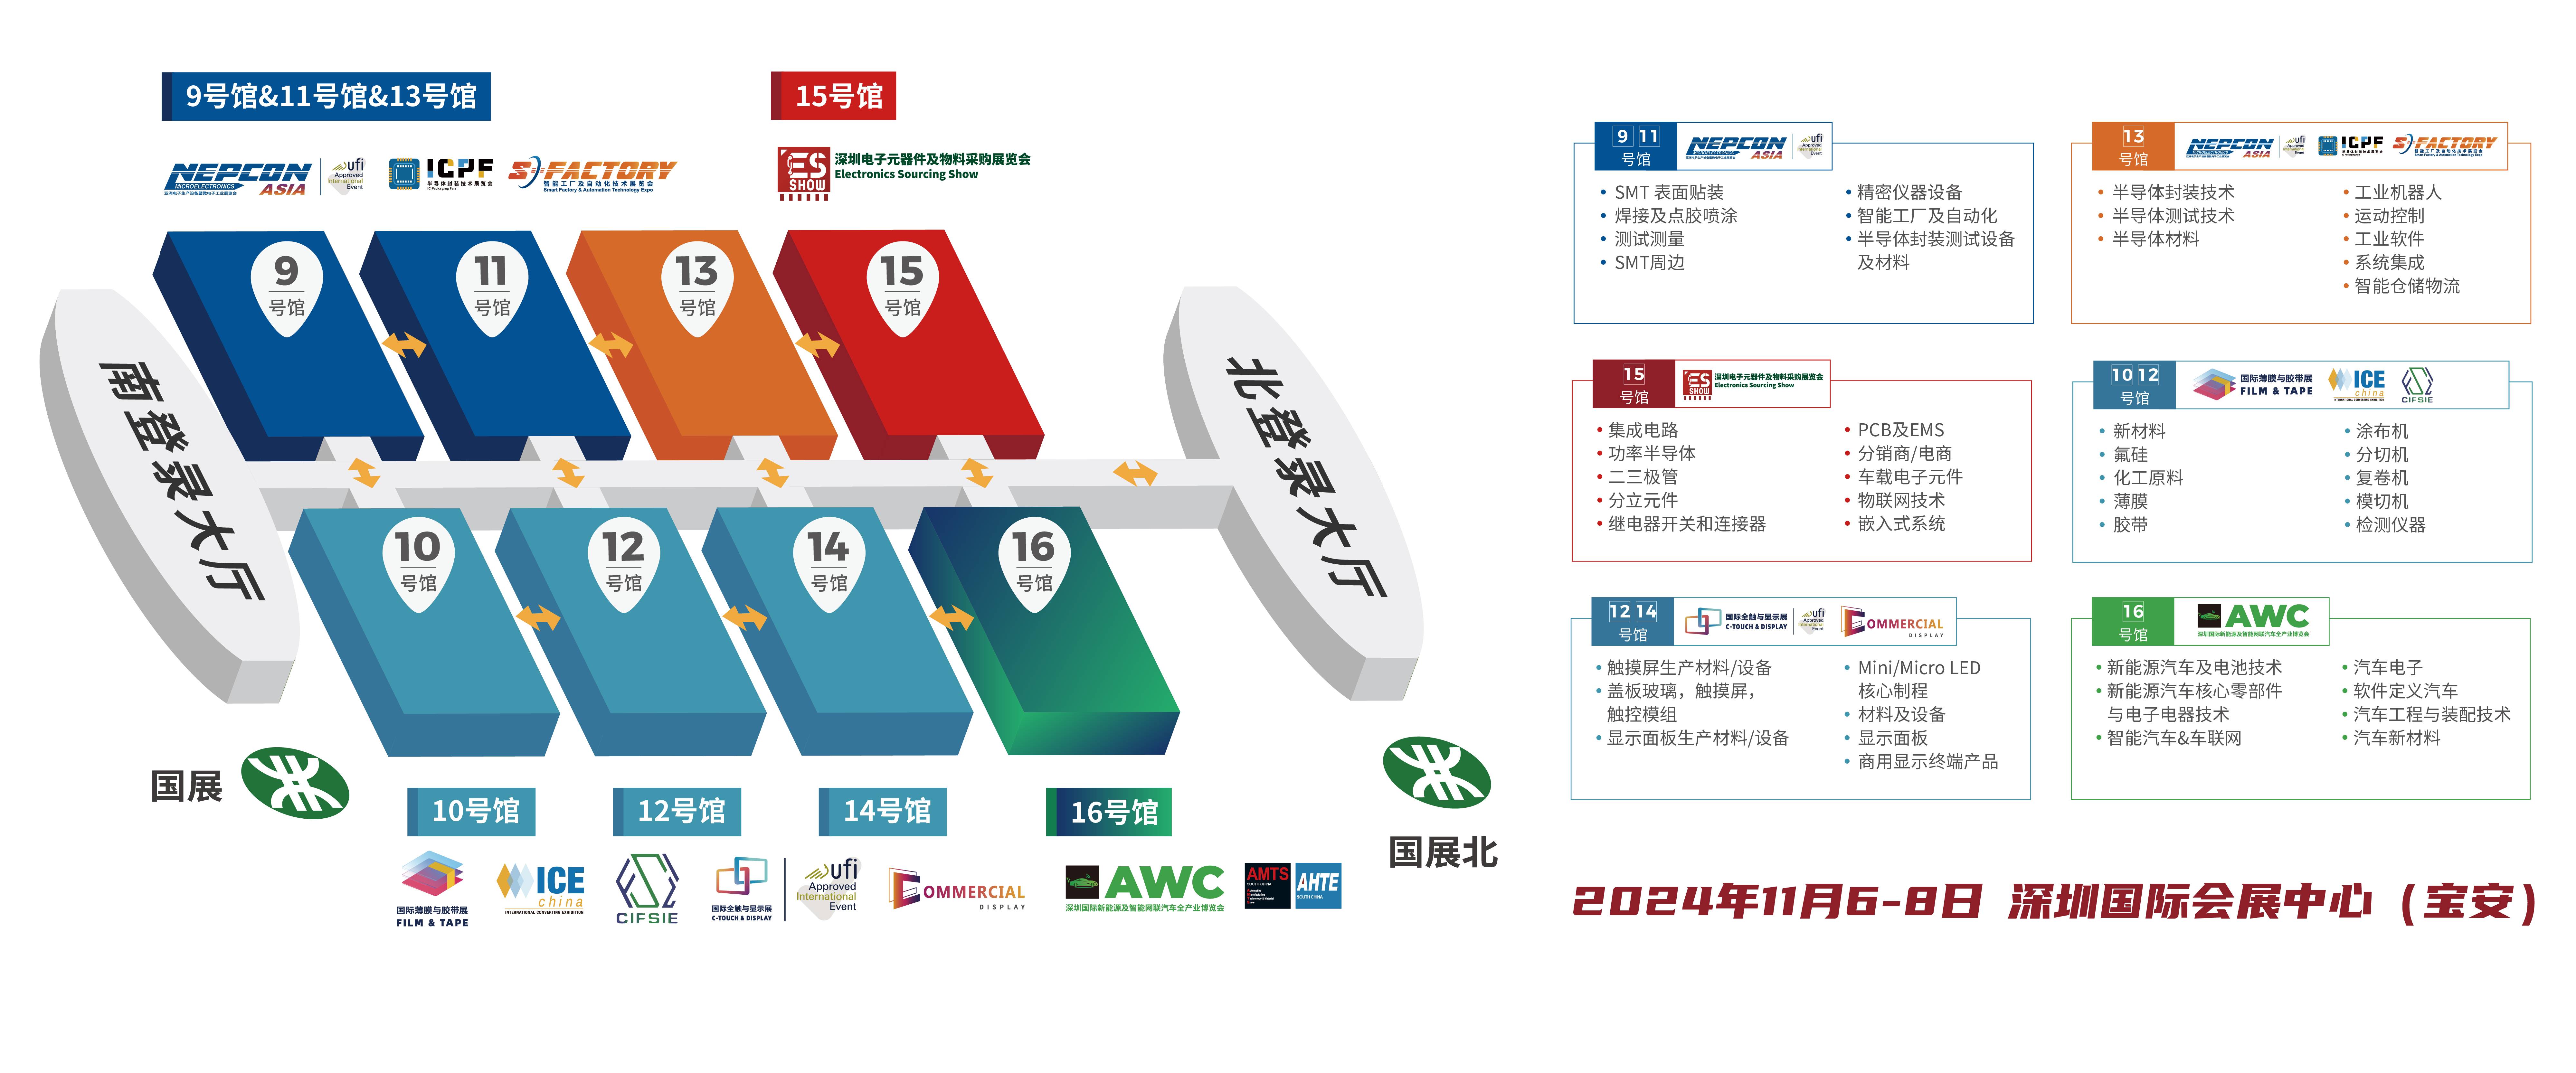 SLAM 机器人 FPGA 华南电子展 深圳电子展中国电子展